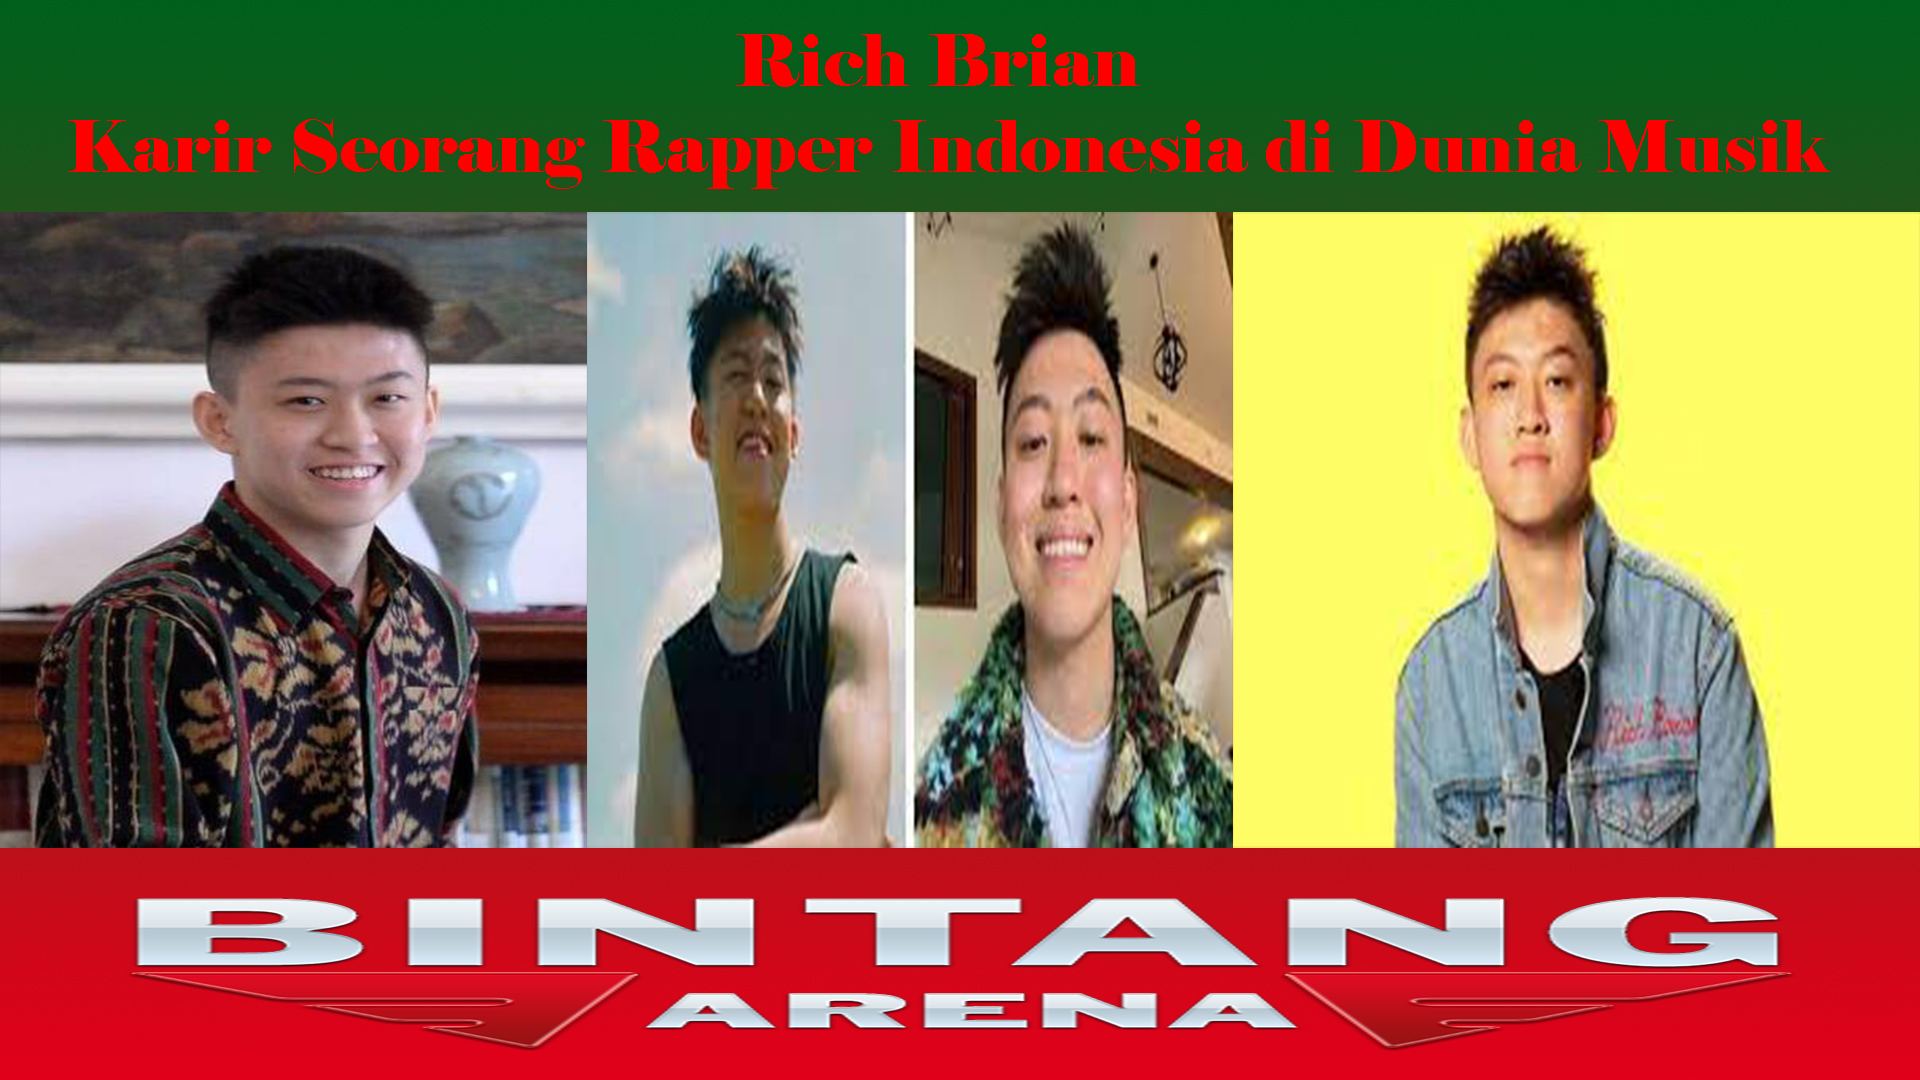 Rich Brian Karir Seorang Rapper Indonesia di Dunia Musik